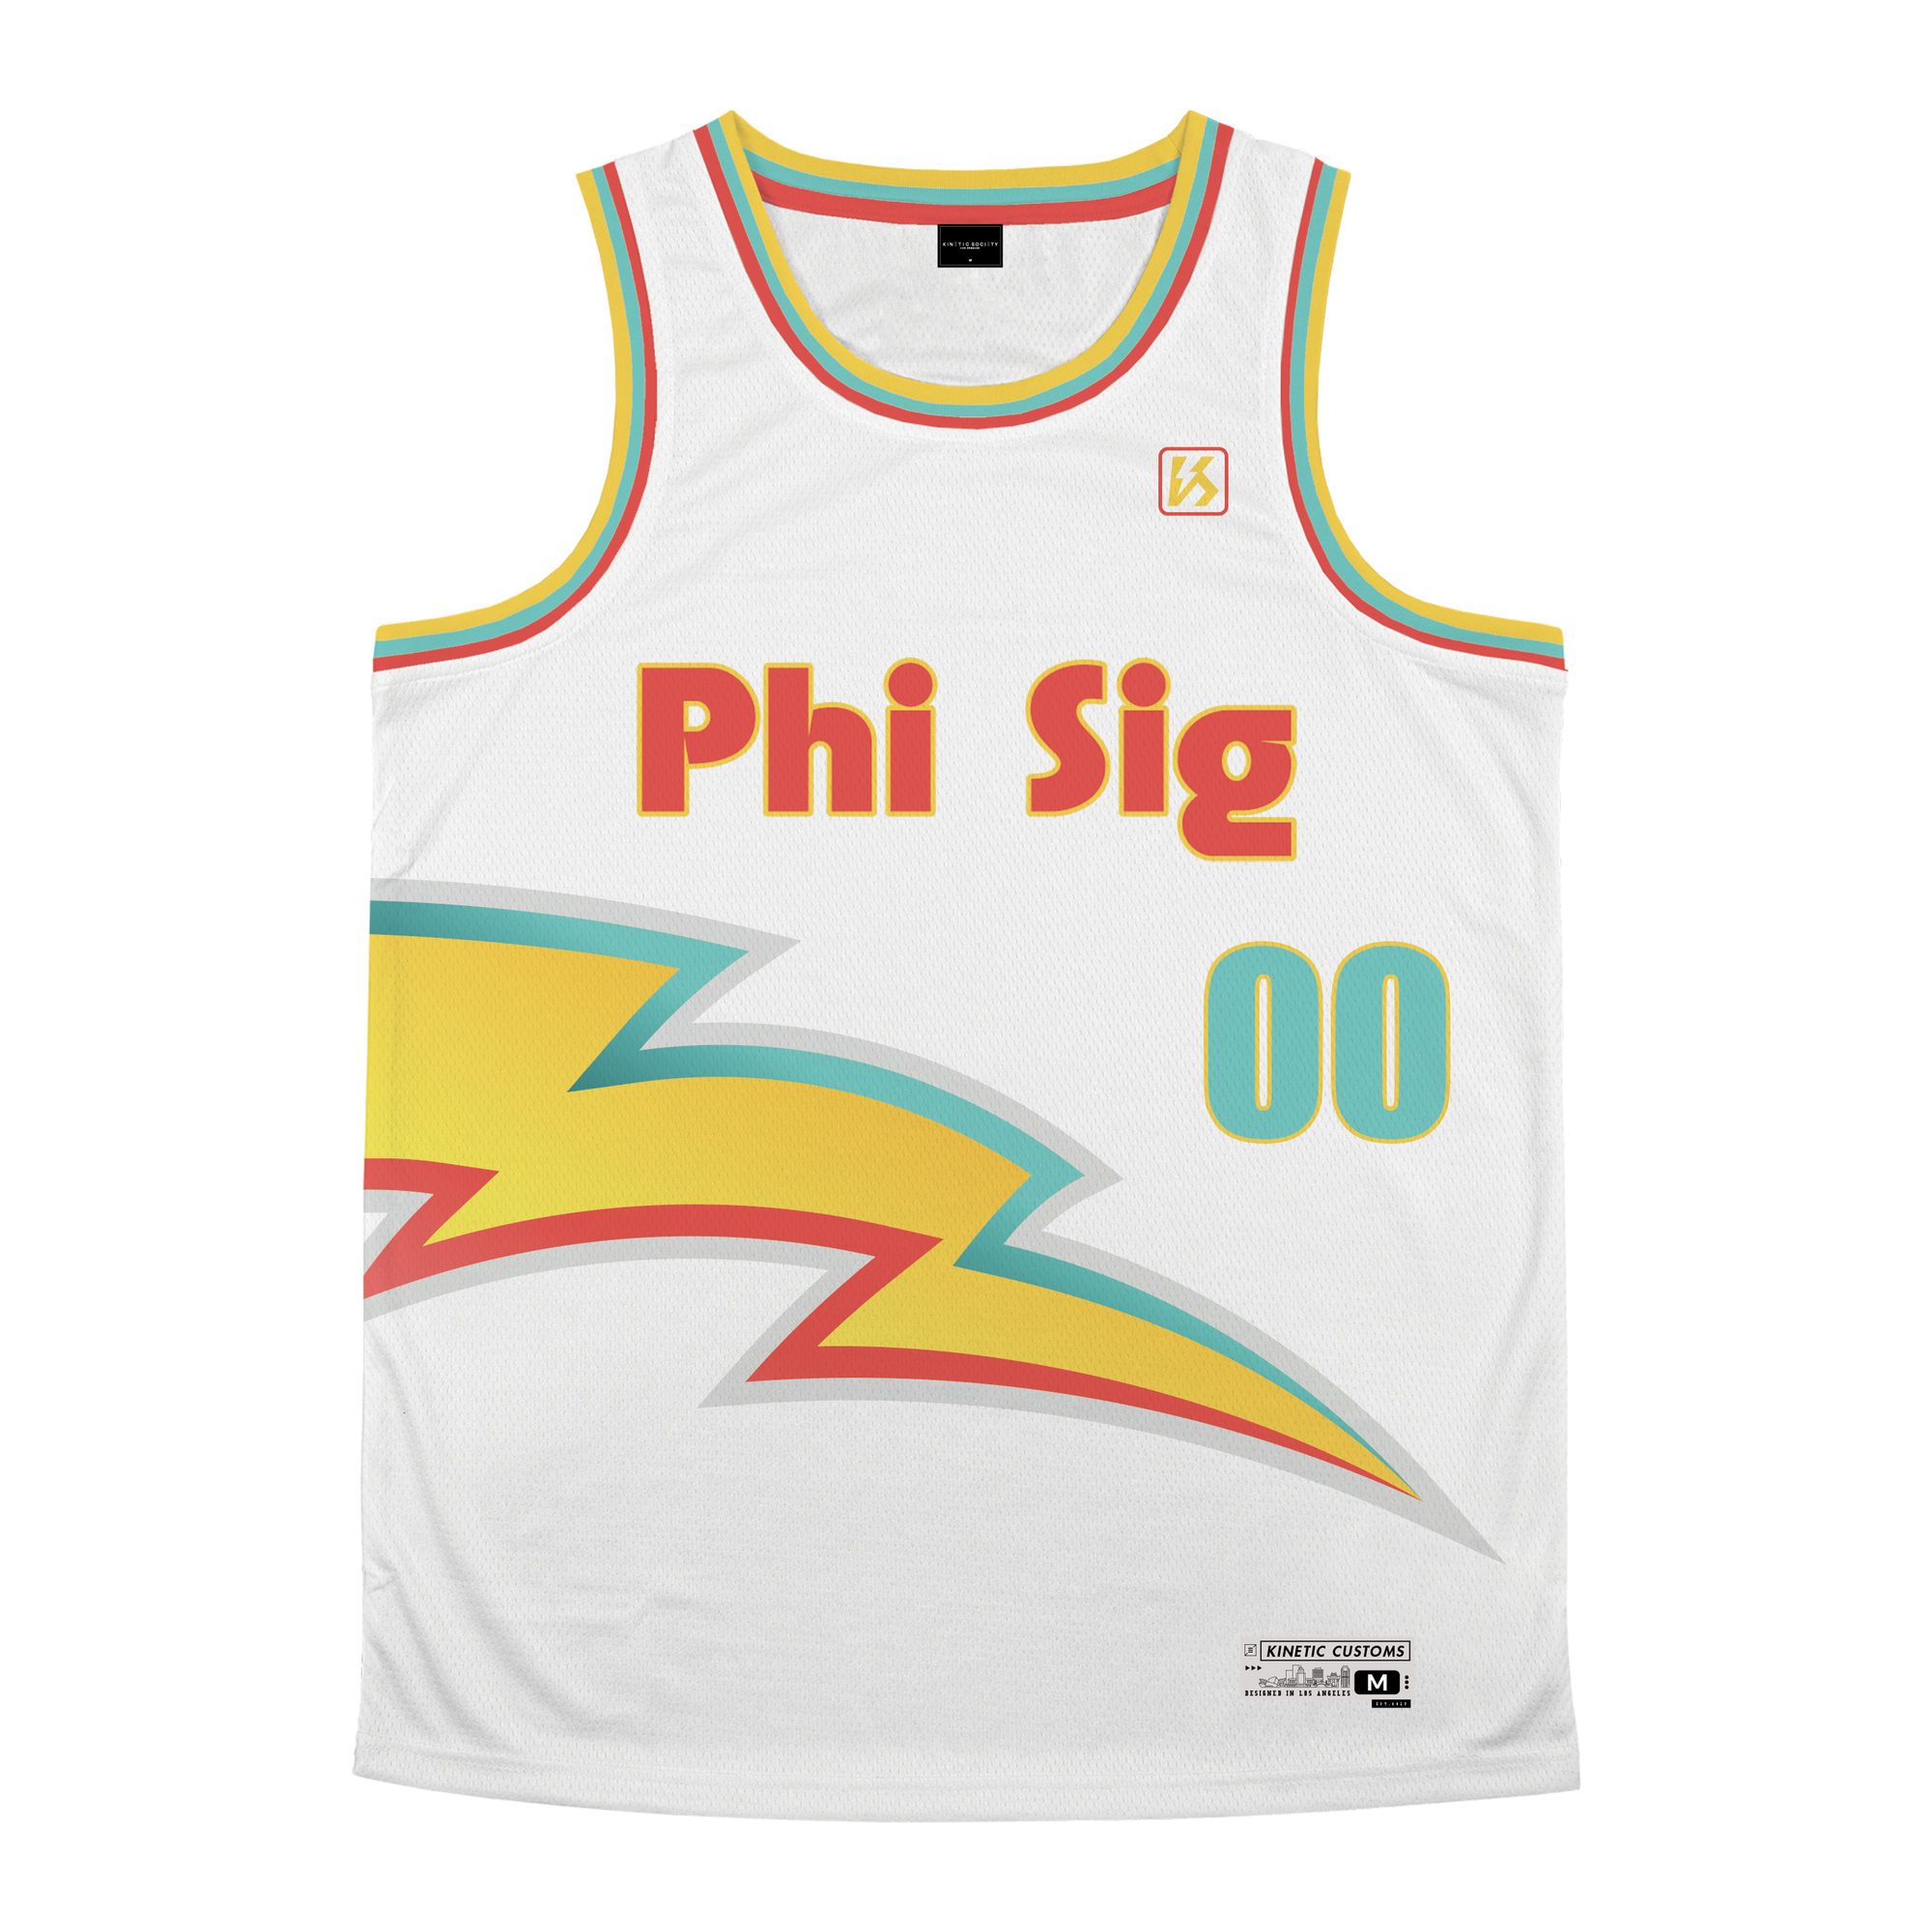 Phi Sigma Kappa - Bolt Basketball Jersey